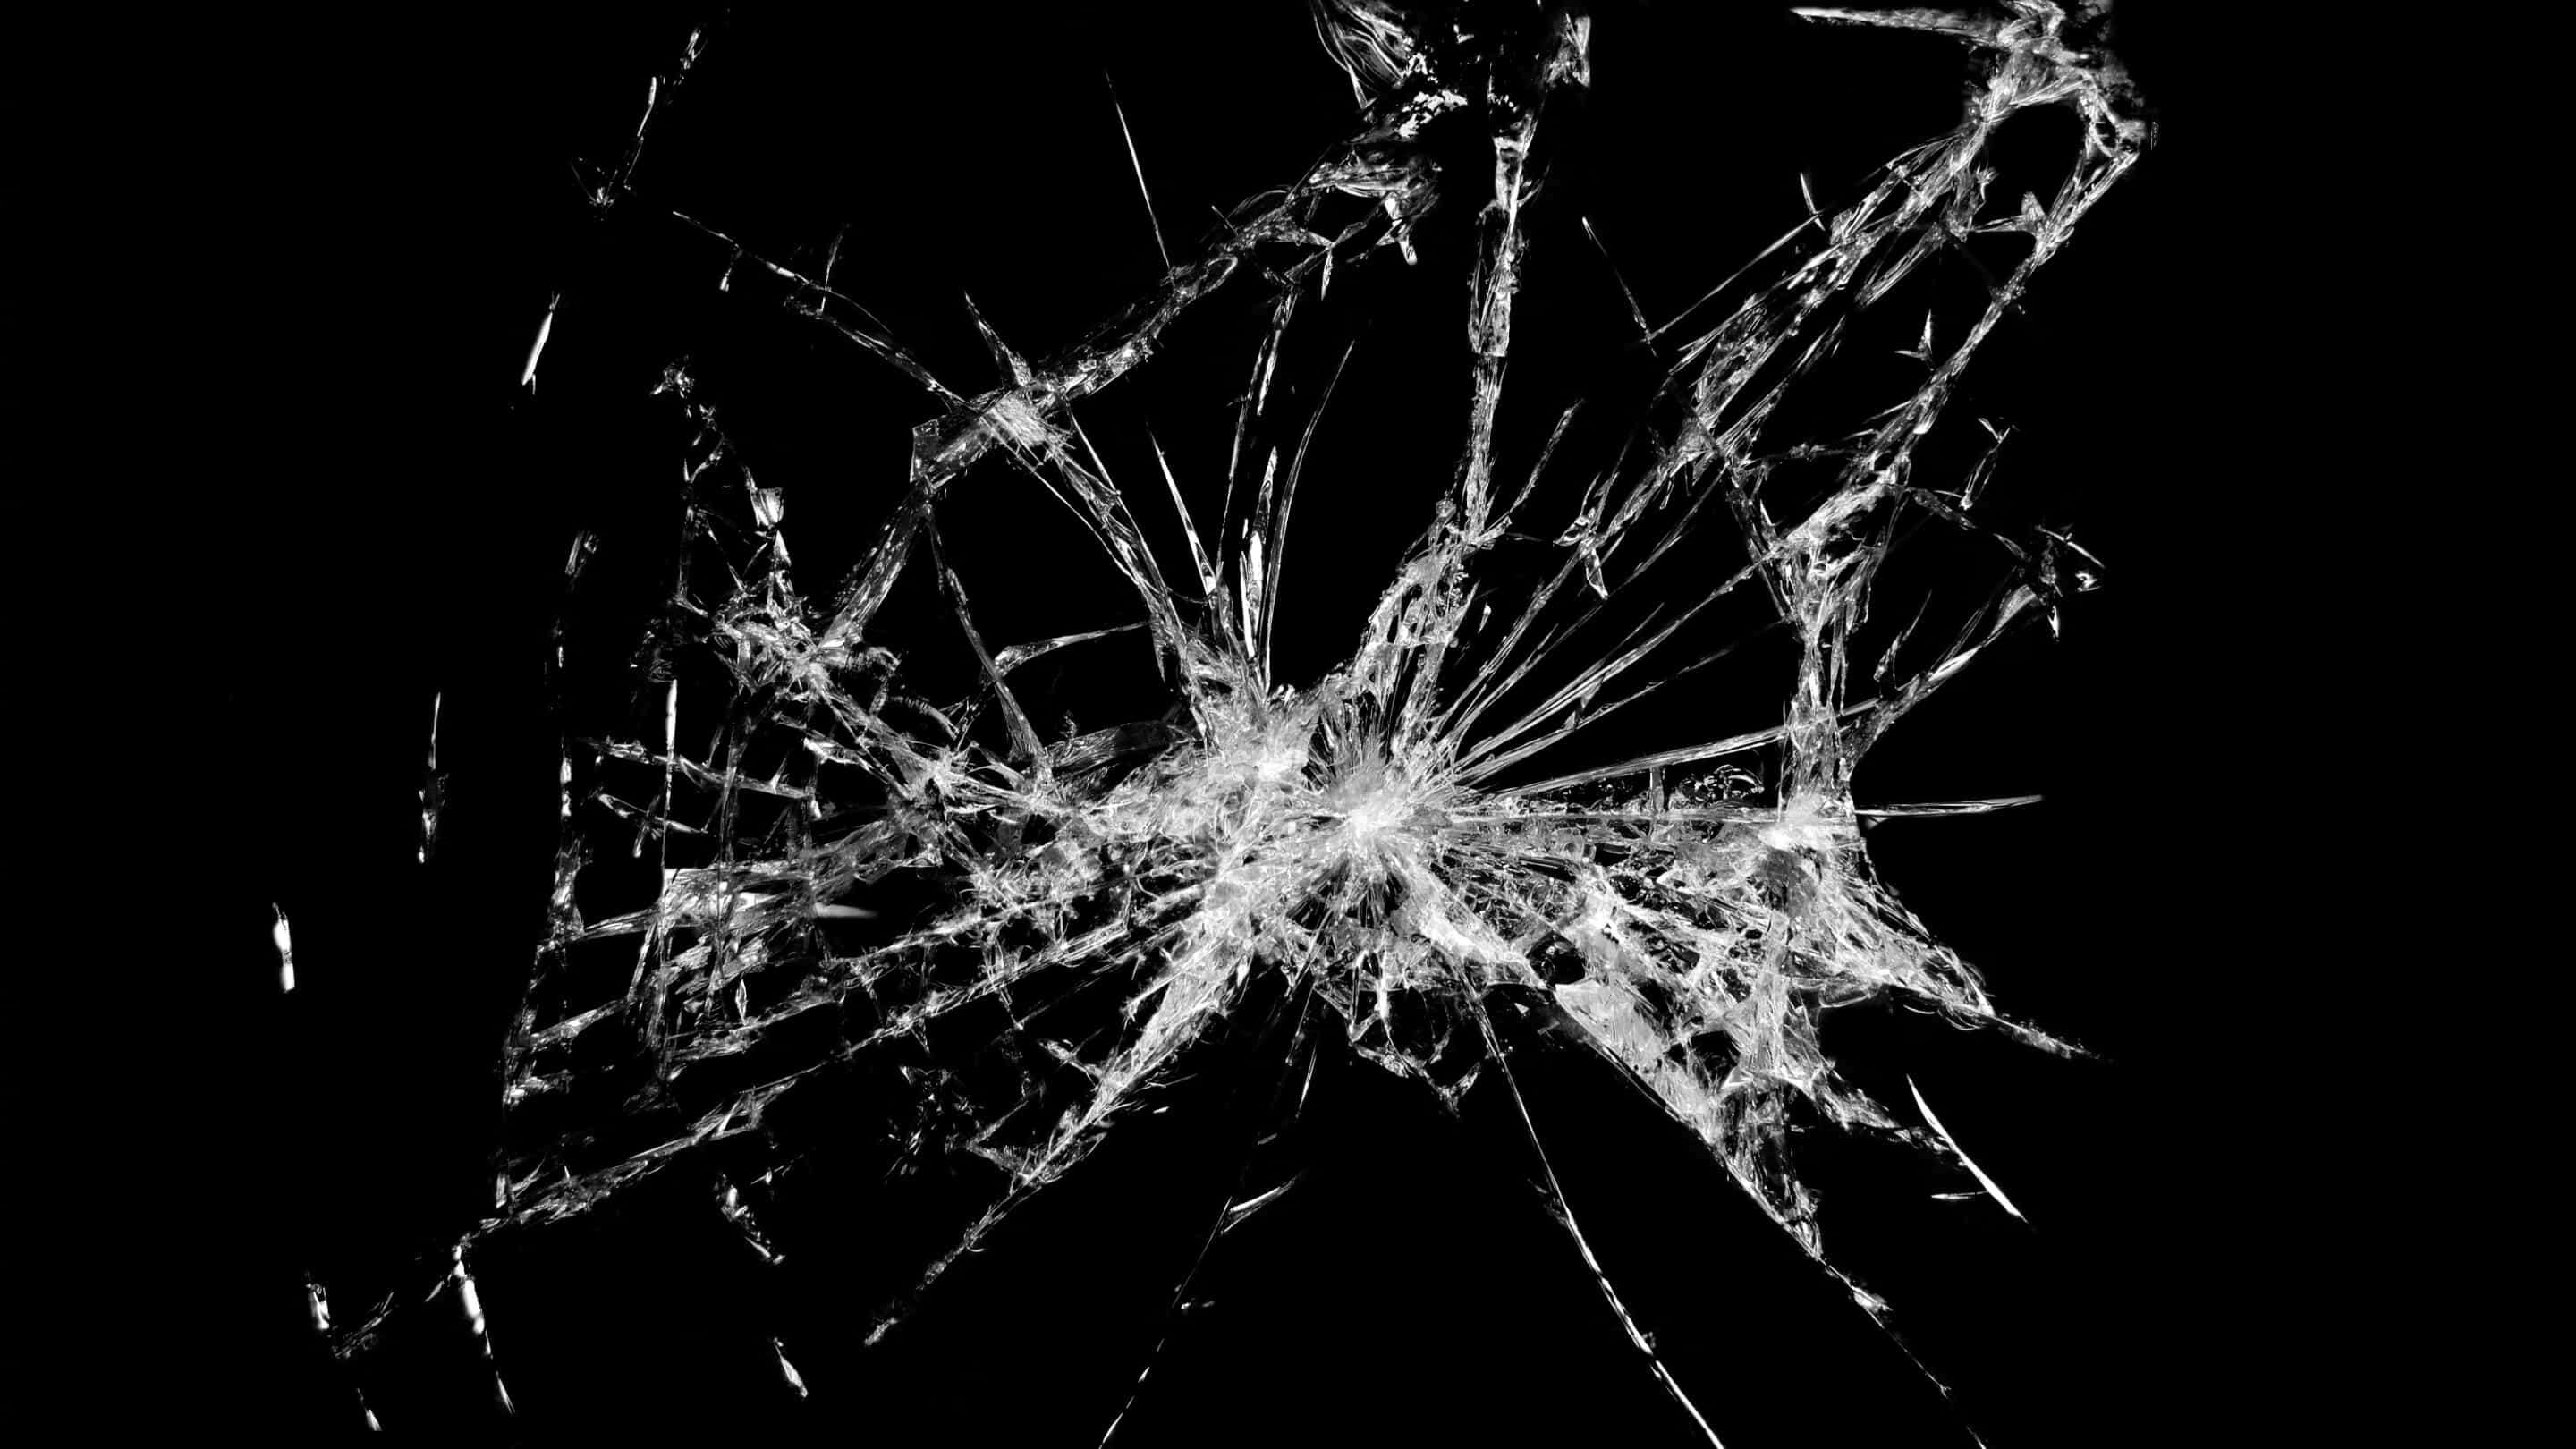 Padrões - Padrões um vidro quebrado com muitas rachaduras